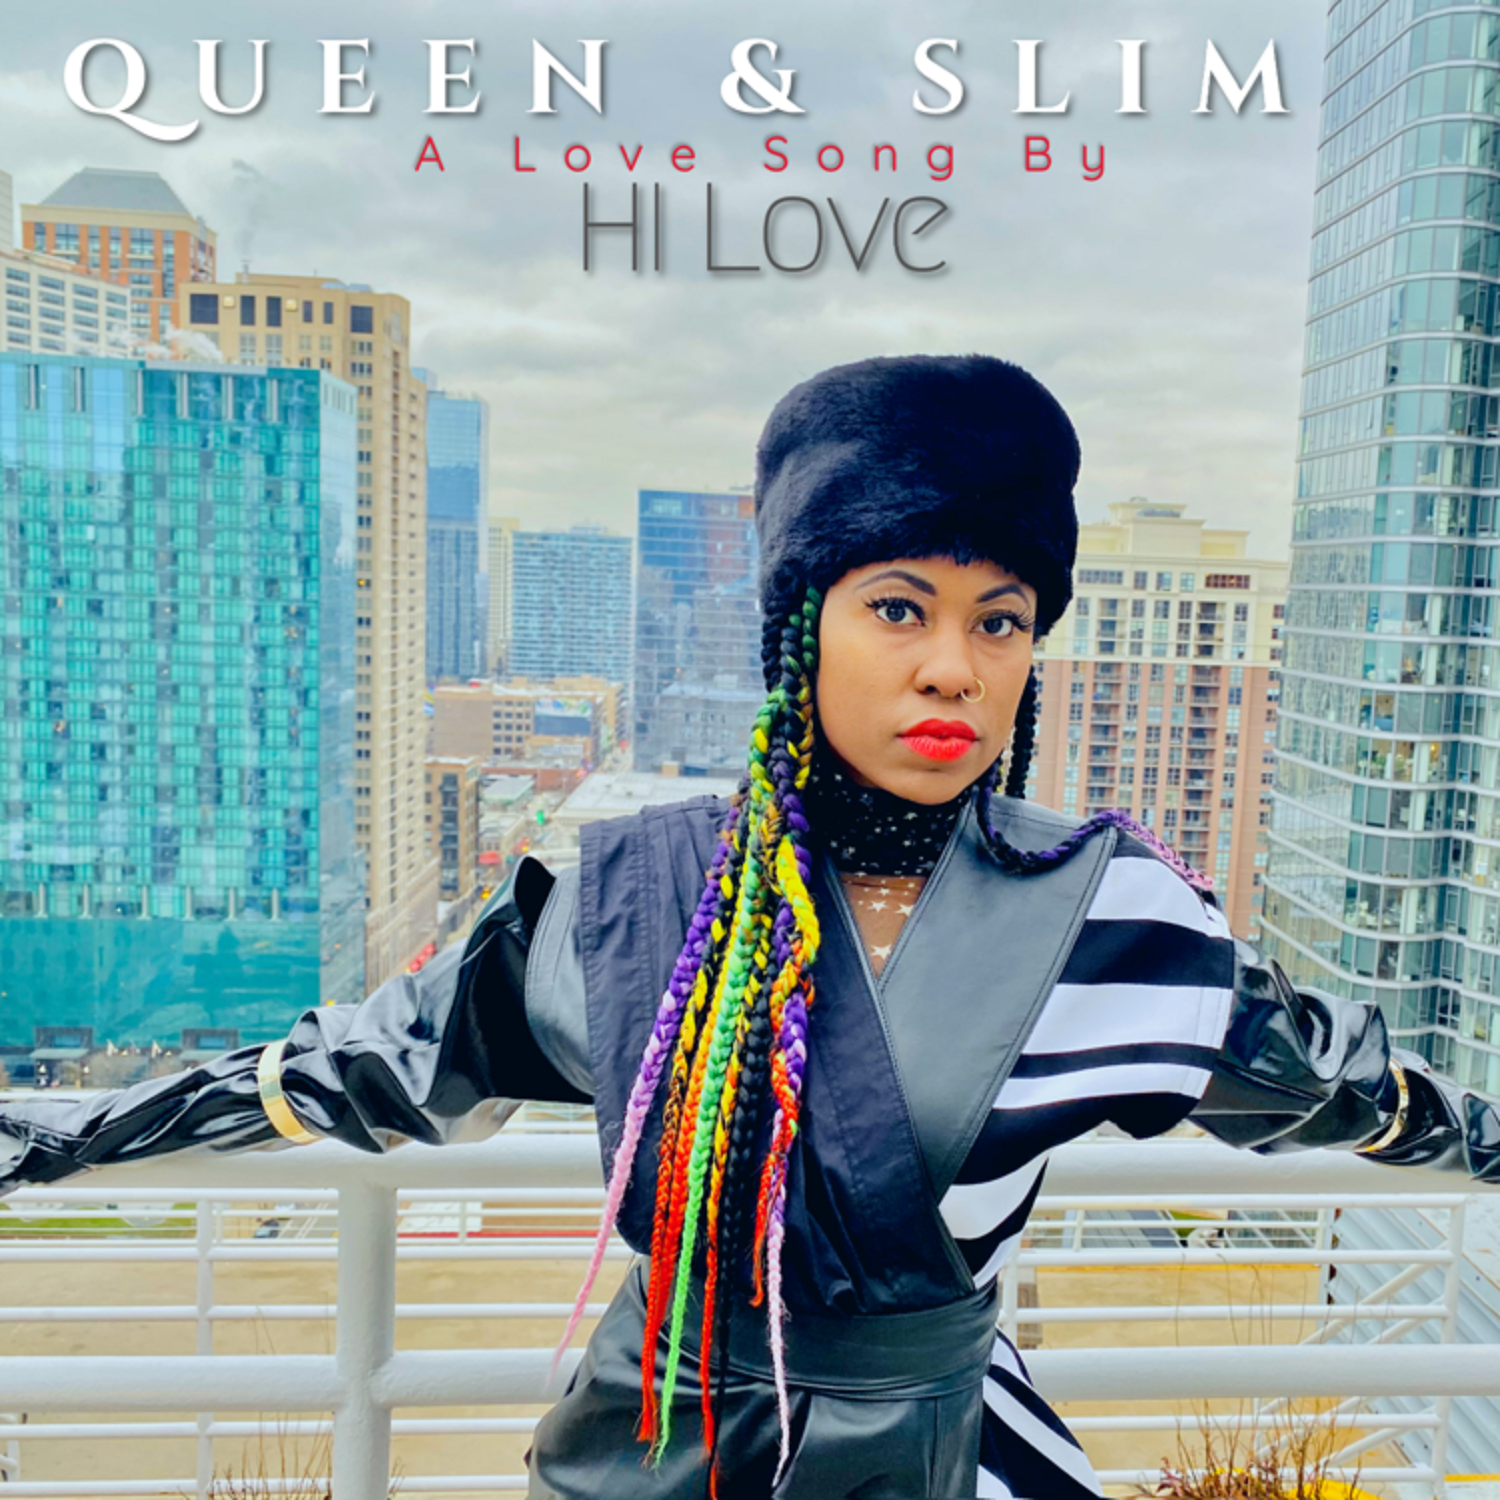 Hi Love – ‘Queen & Slim’